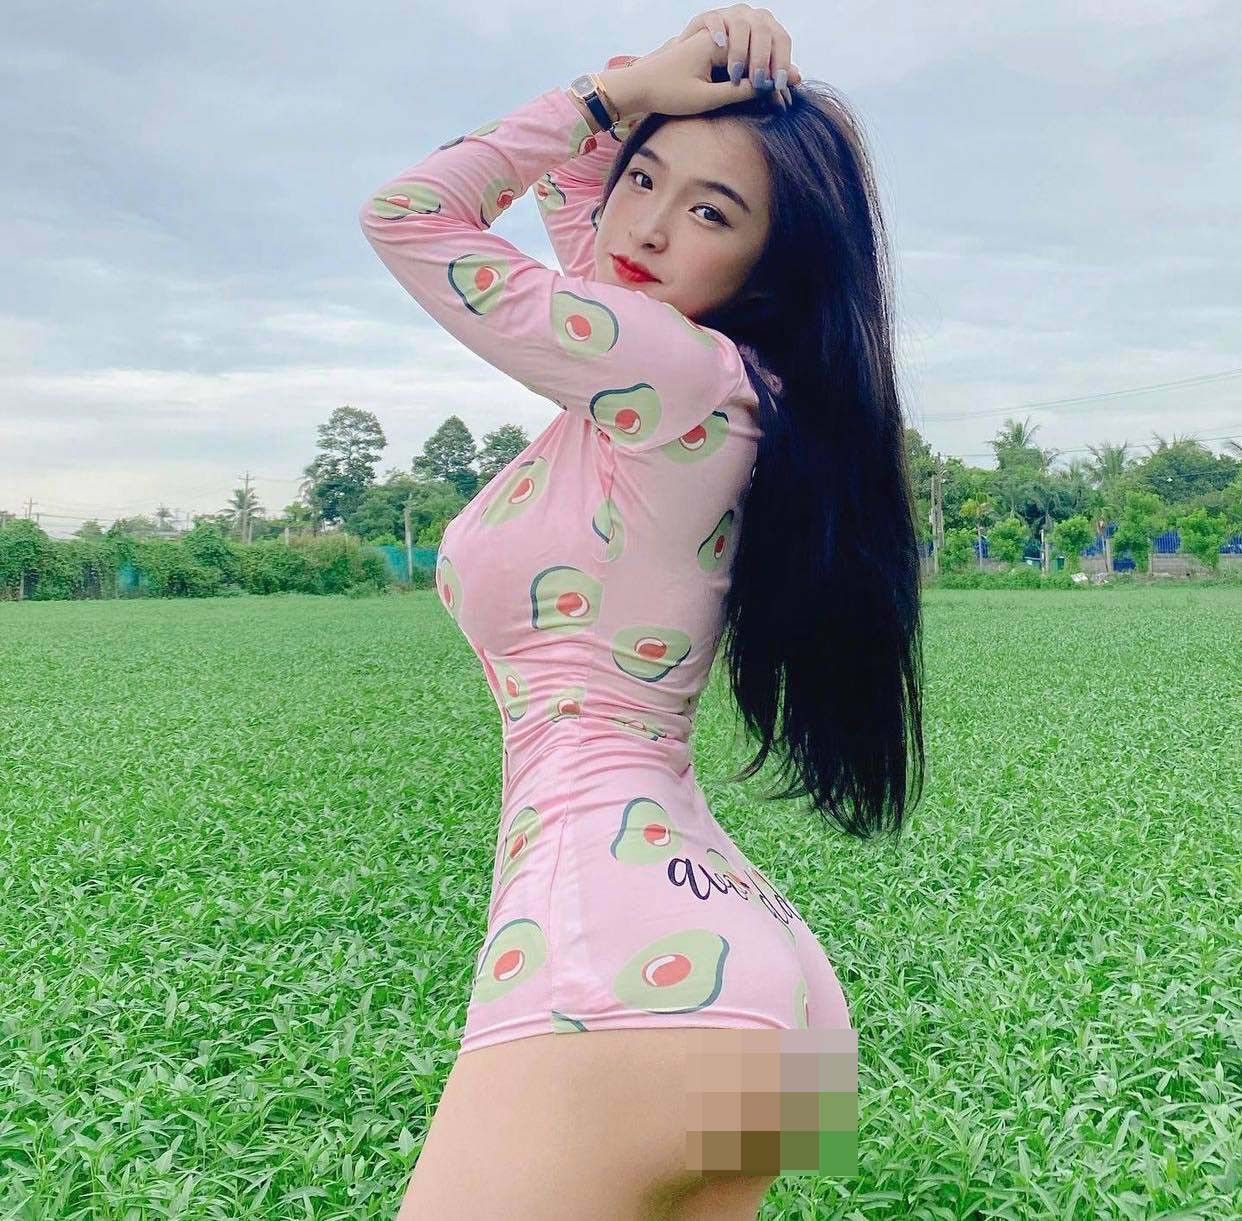 Nữ sinh Biên Hòa diện bodysuit đi gặt lúa bị nhận xét 